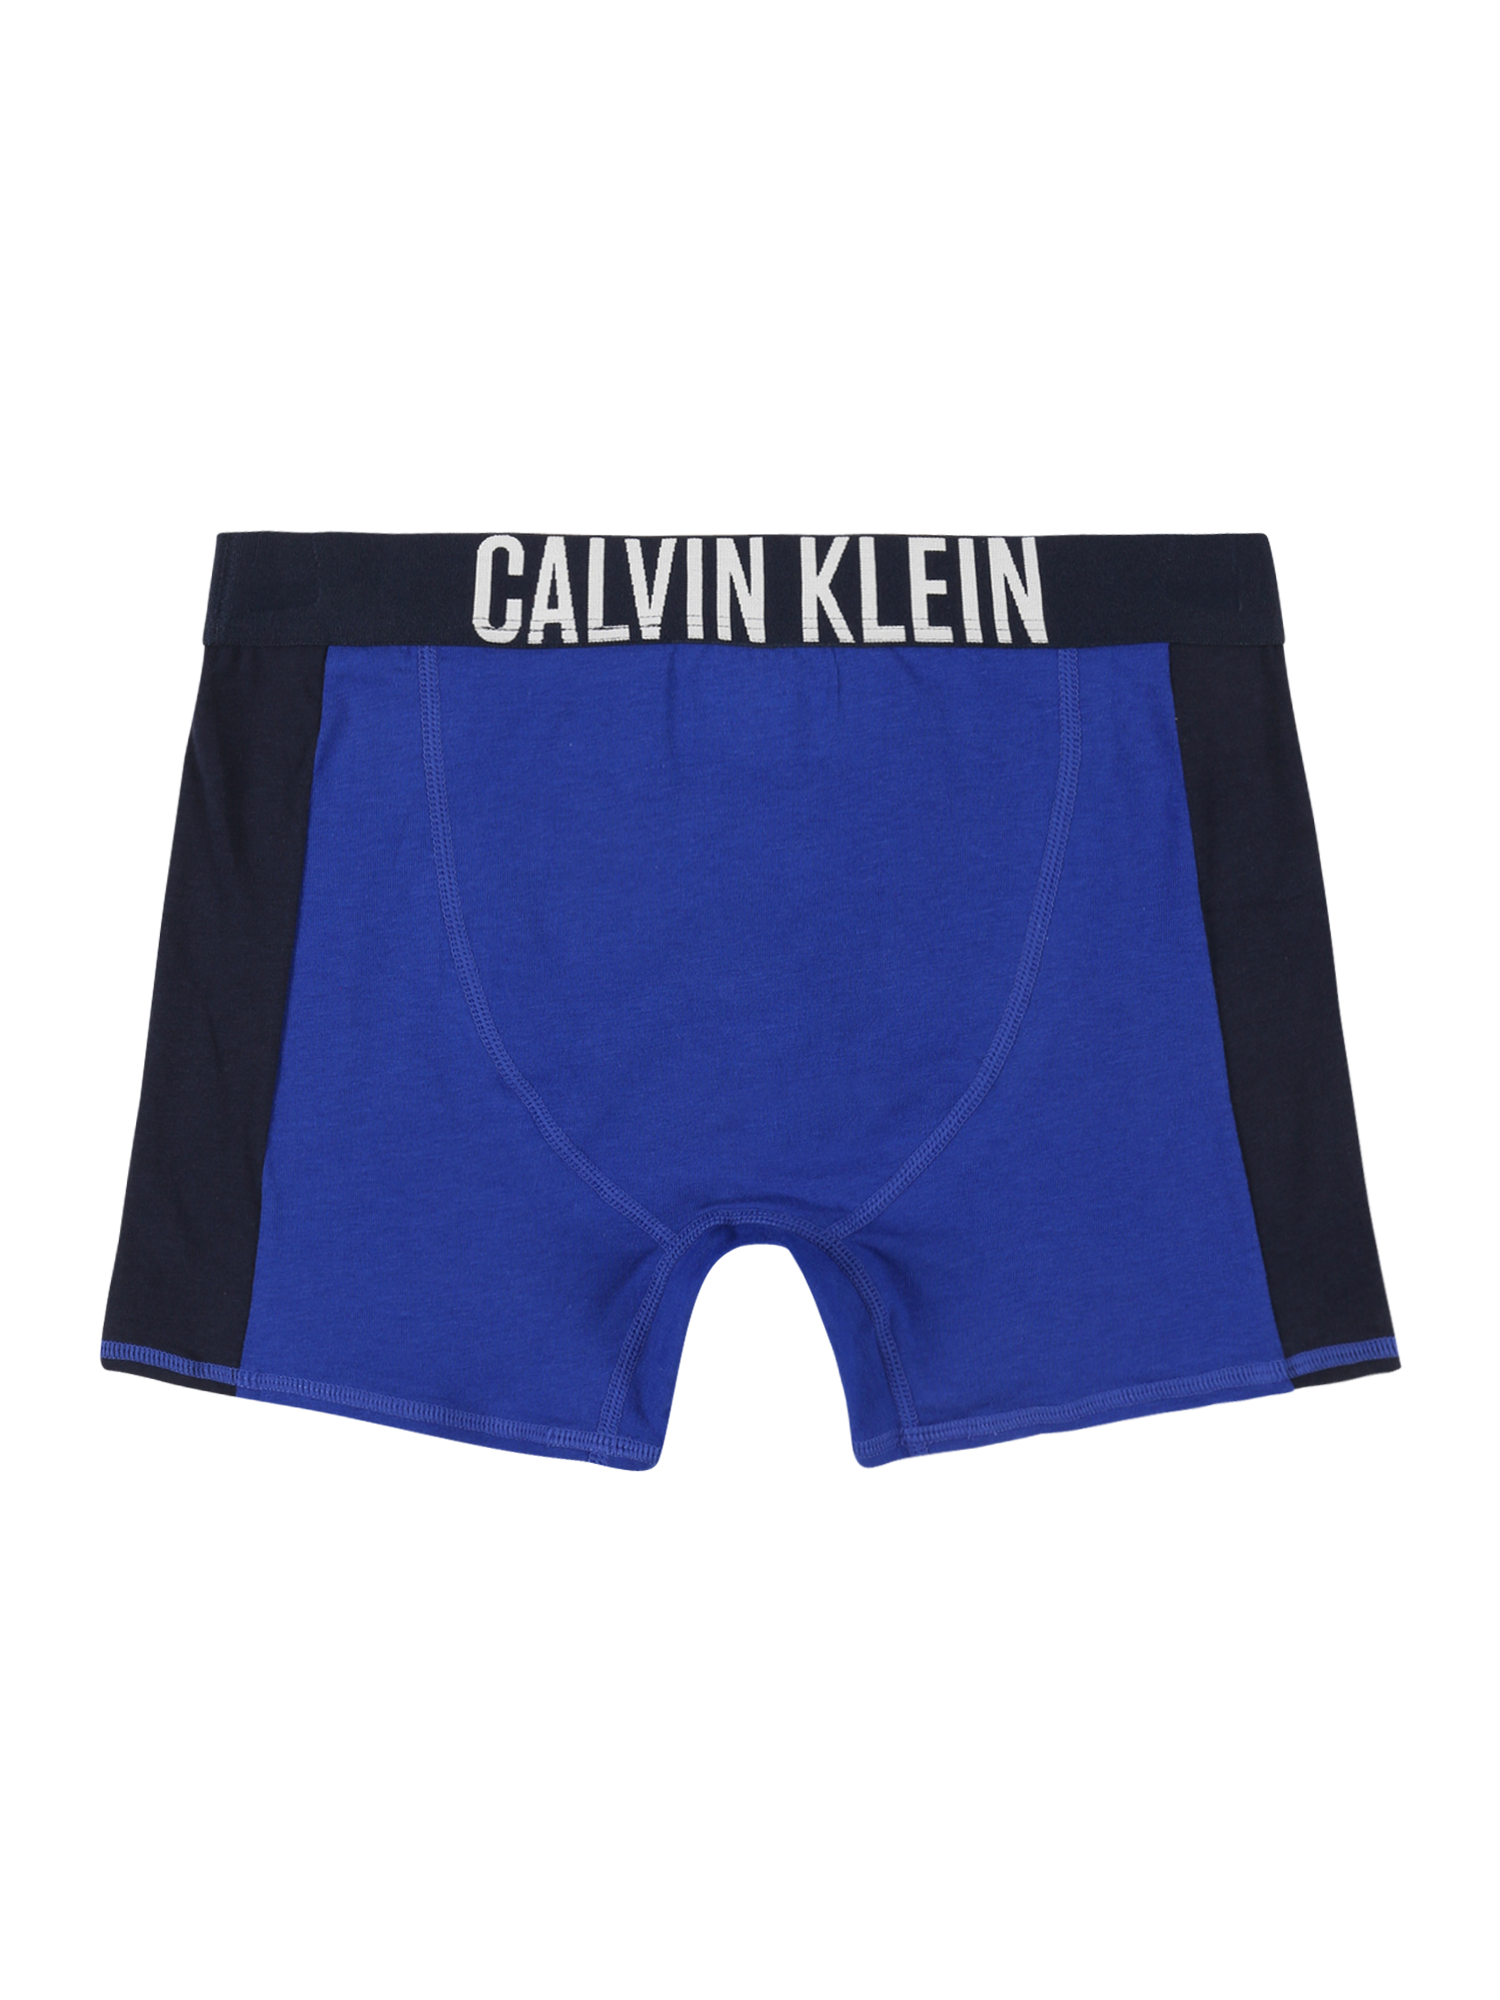 Młodzież (140-176 cm) Chłopcy Calvin Klein Underwear Bielizna Intense Power w kolorze Niebieska Noc, Niebieskim 